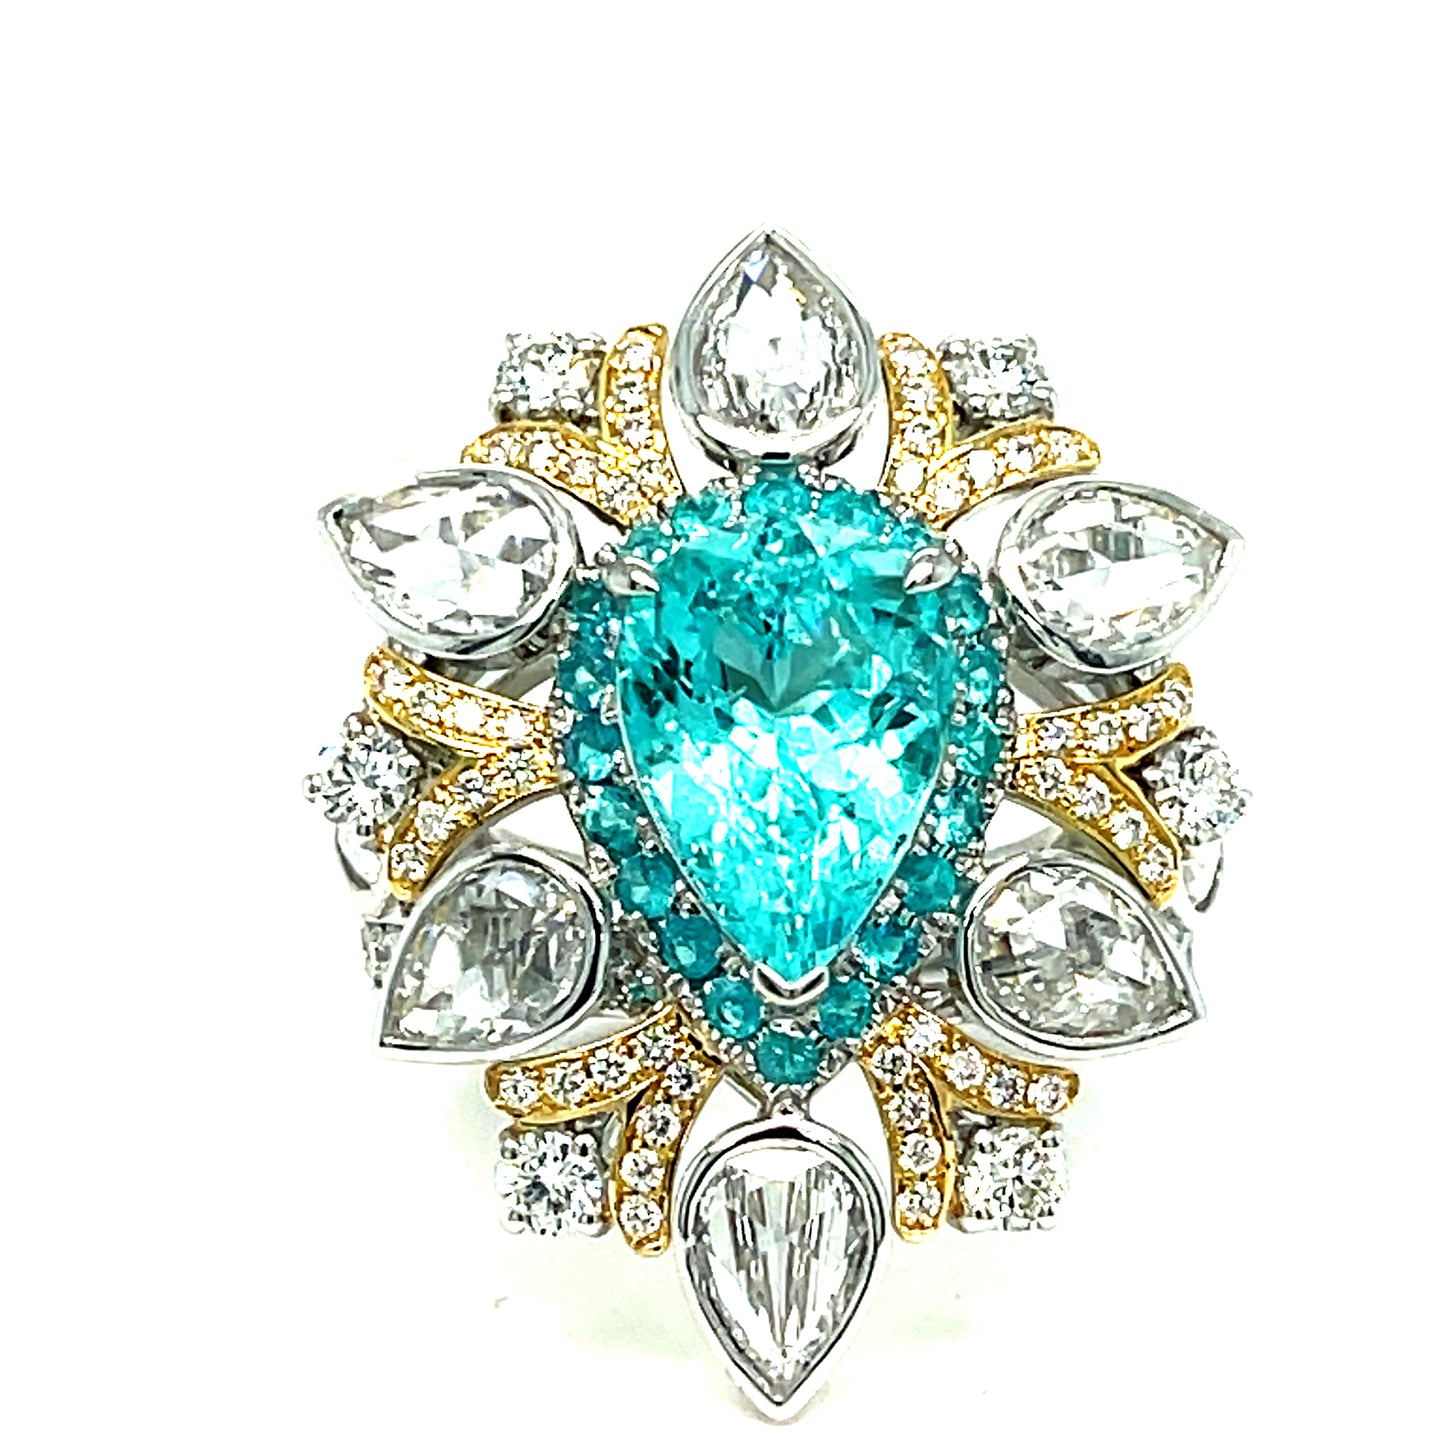 Paraiba Diamond Engagement Ring in Platinum